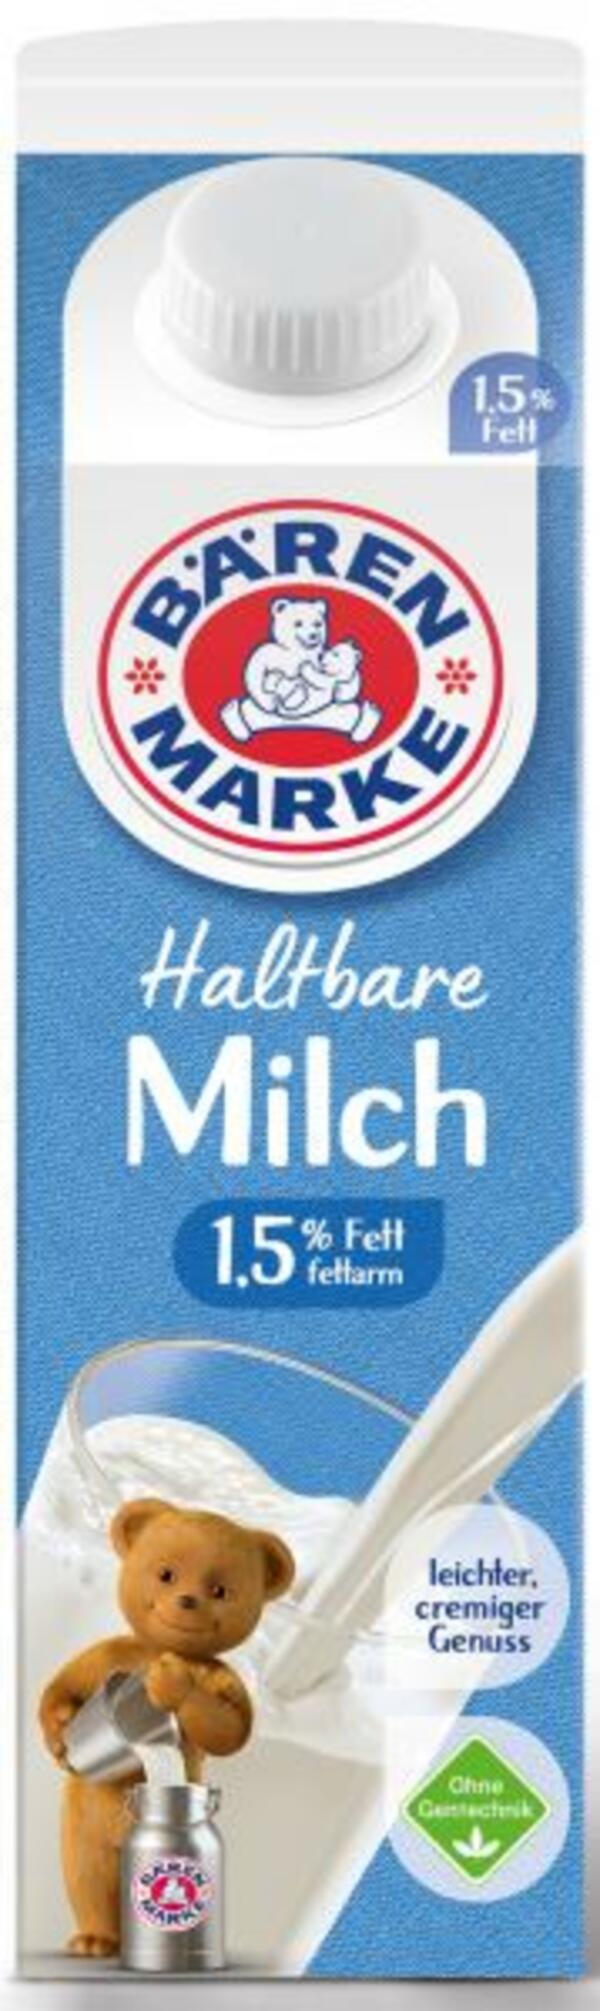 Bild 1 von Bärenmarke Haltbare Milch 1,5%